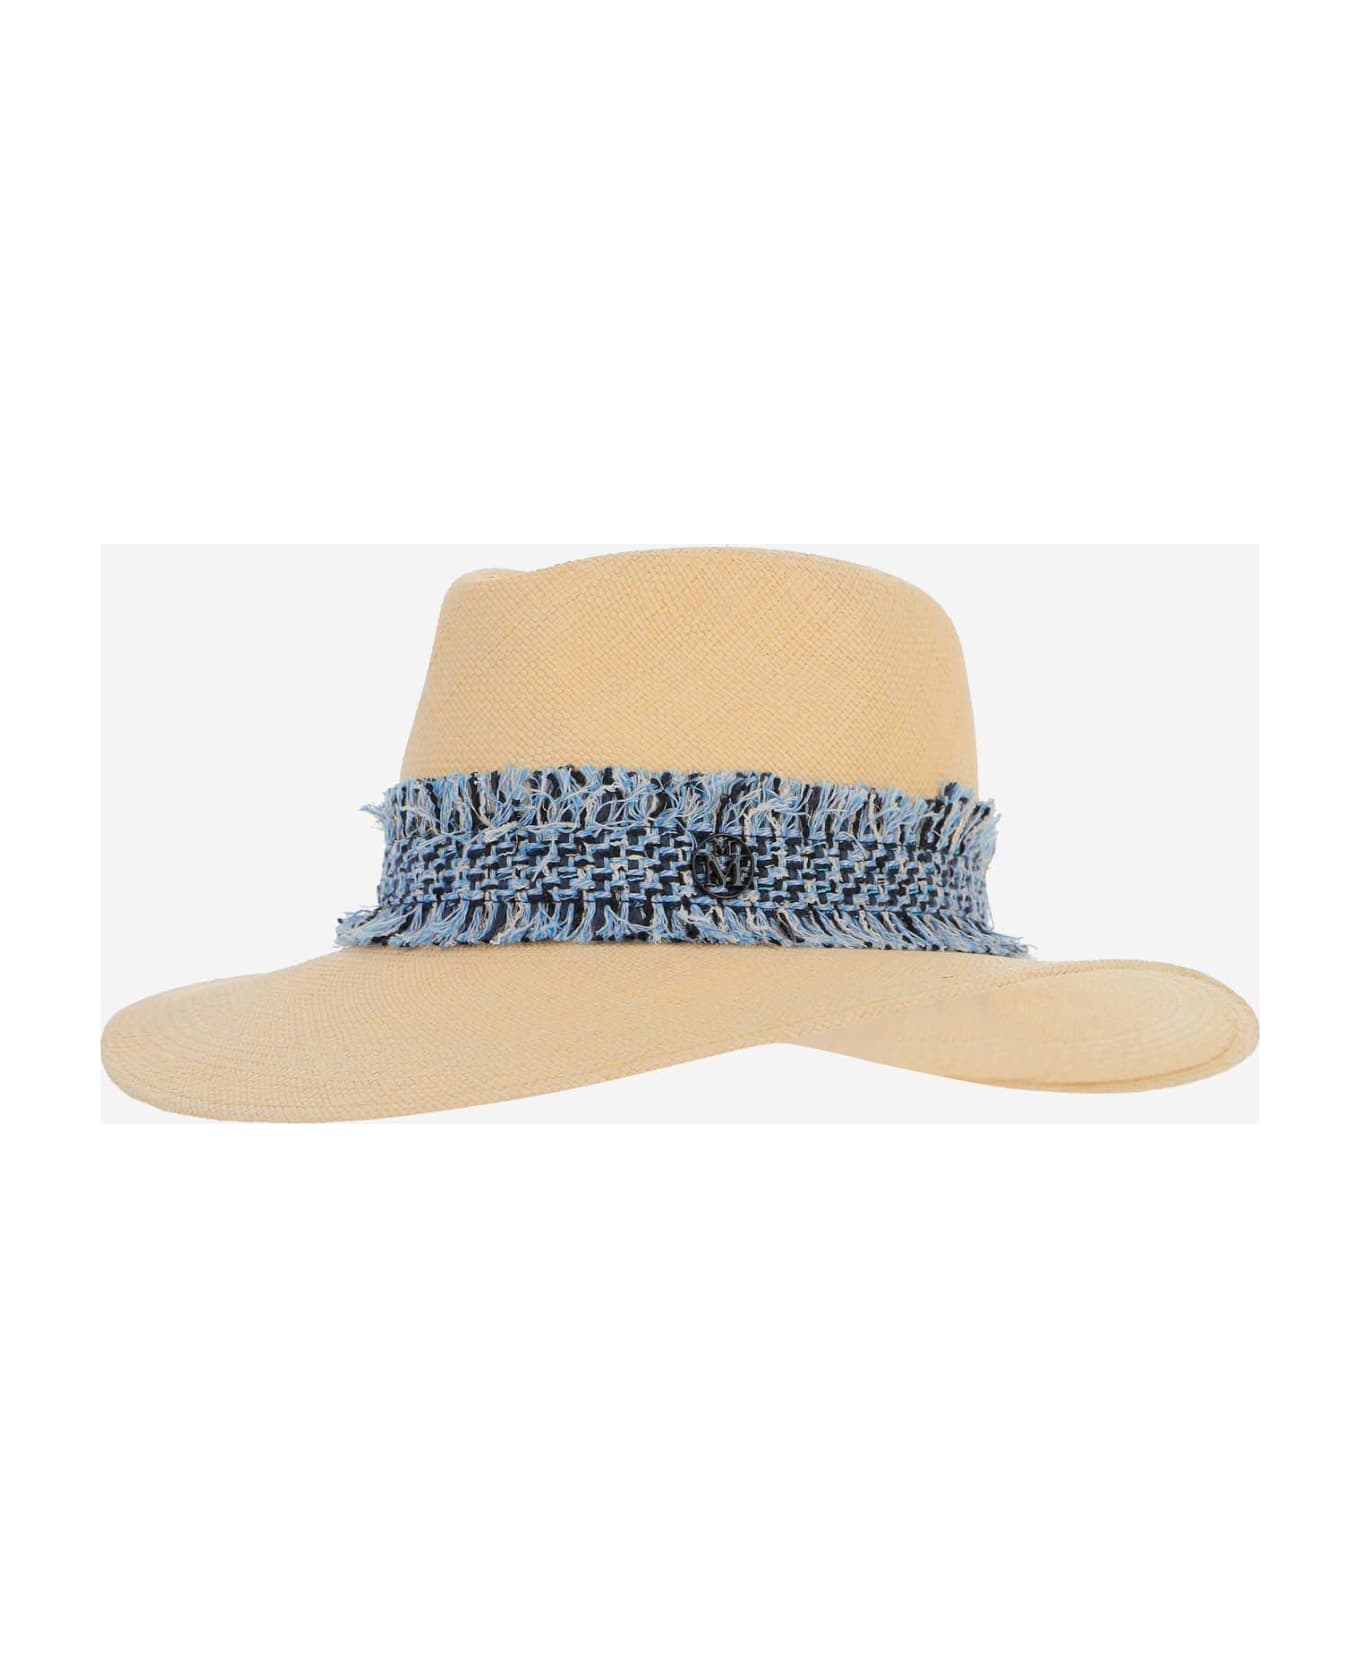 Maison Michel Henrietta Staw Fedora Hat - Beige 帽子